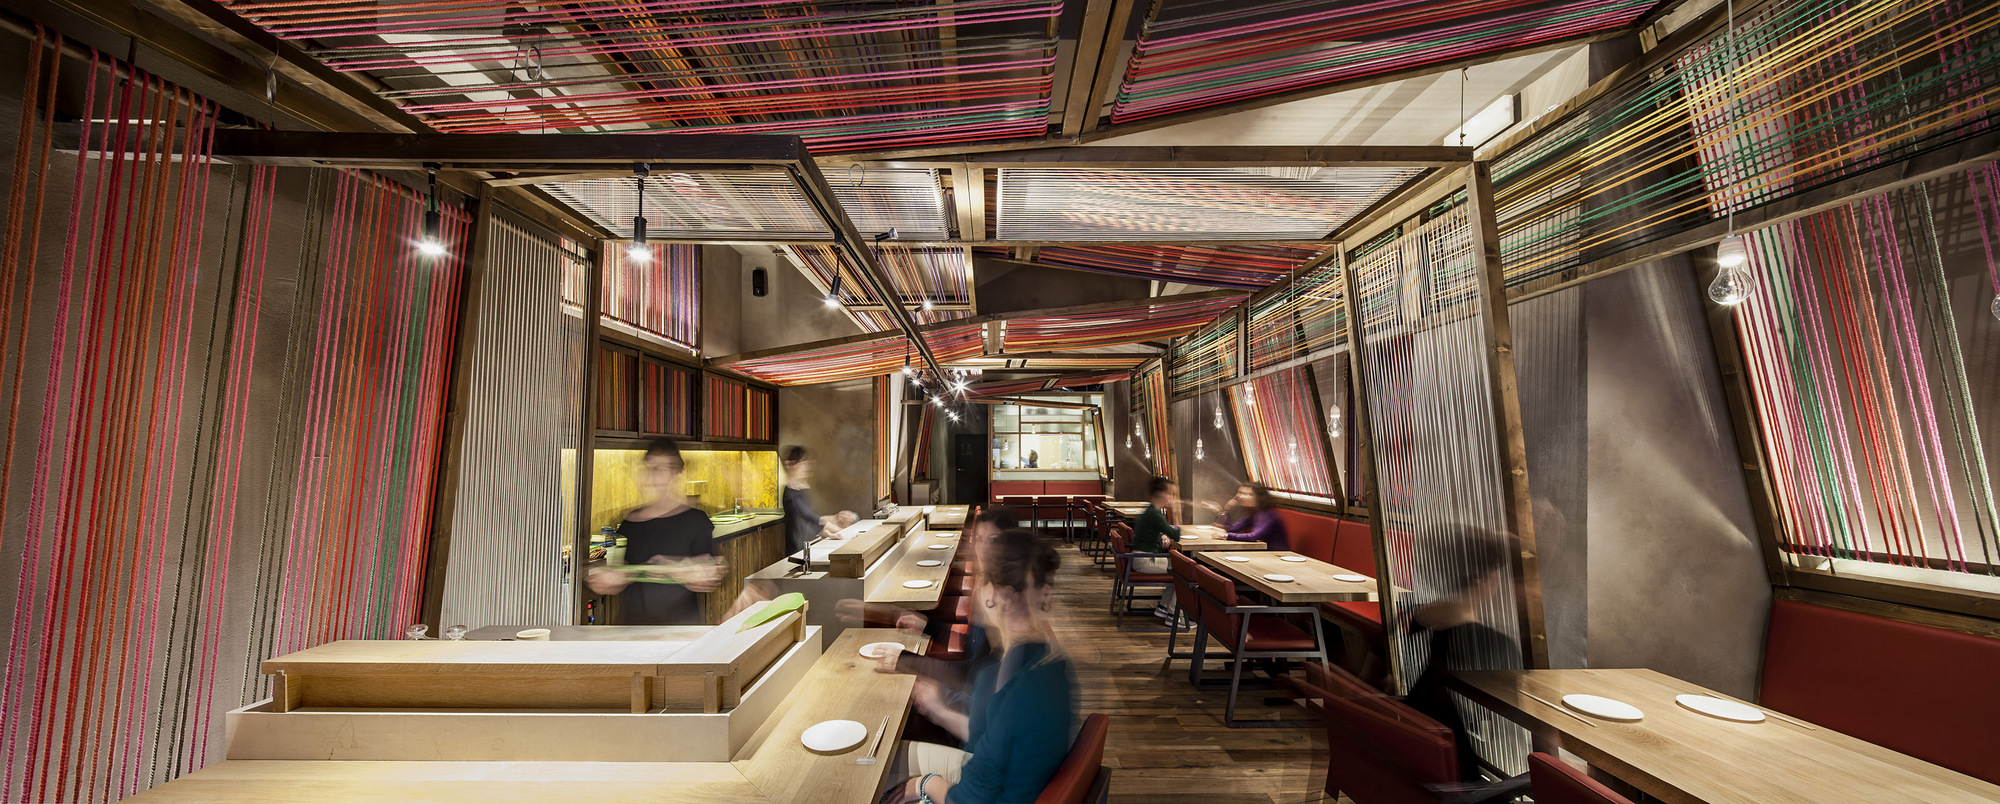 图片[2]|Pakta餐厅|ART-Arrakis | 建筑室内设计的创新与灵感